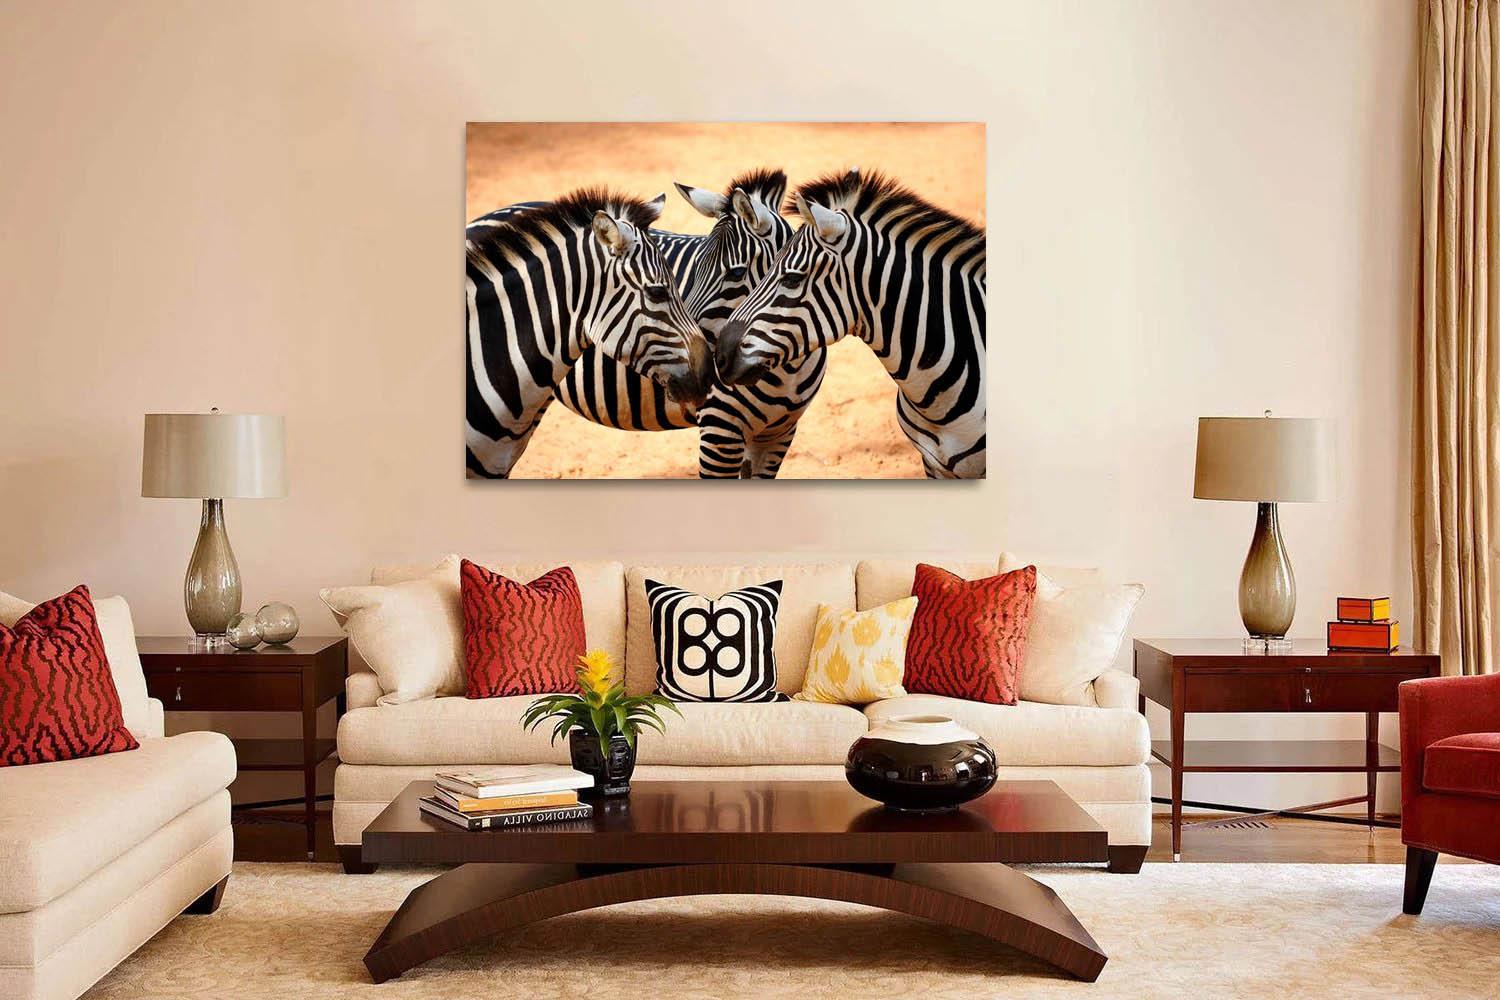 Fotoattēlā - trīs zebras uz dzeltena fona